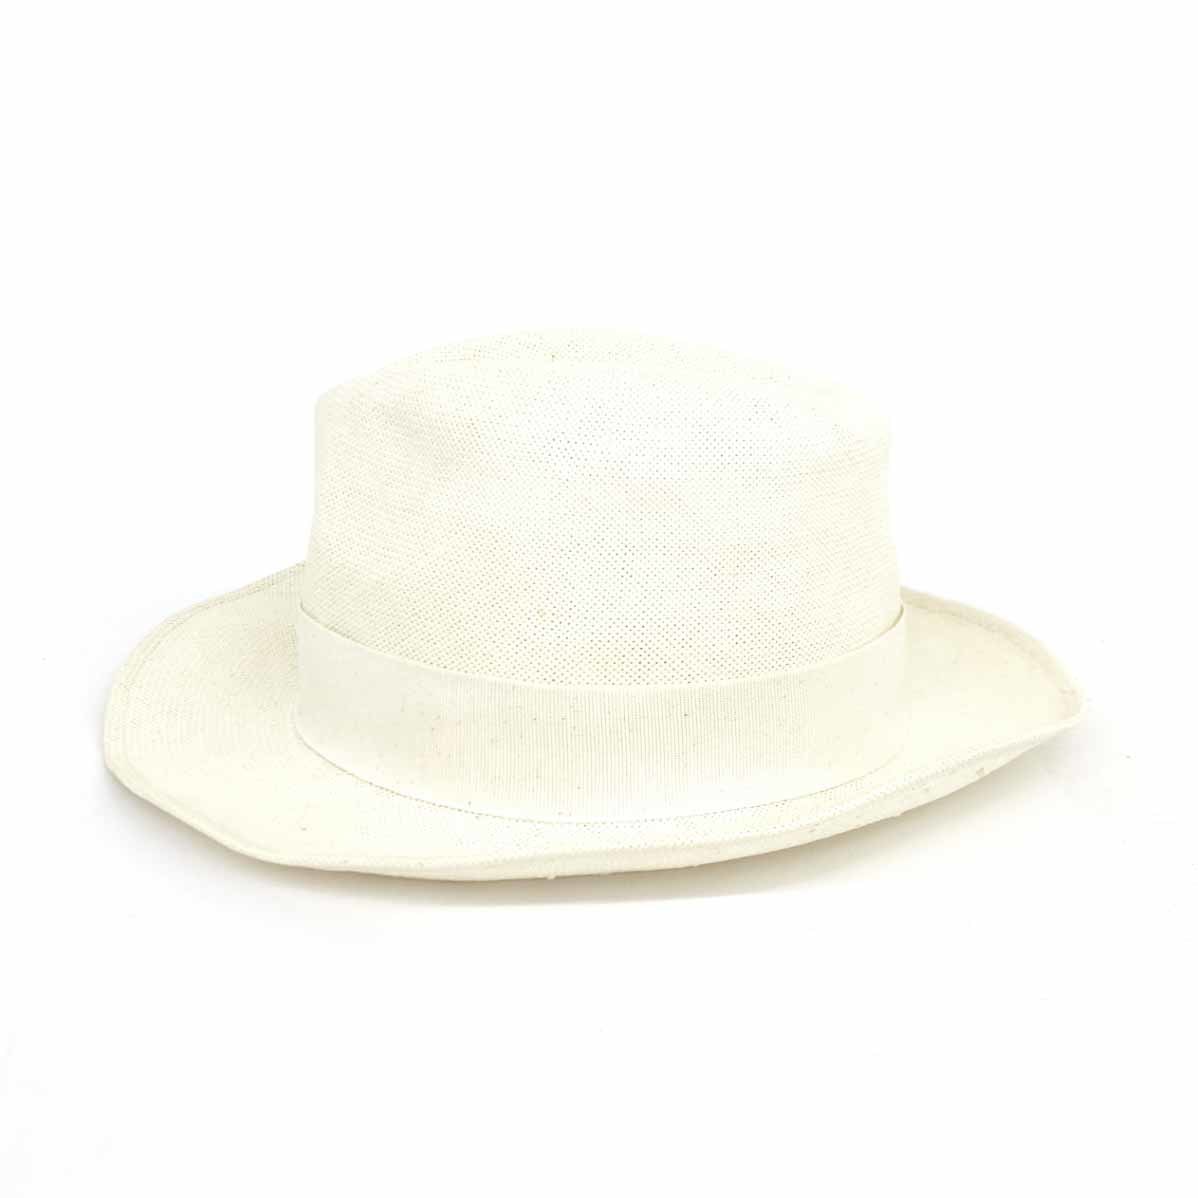 良好◆bettina ベッティーナ ストローハット ◆ オフホワイト PAPER100% 中折れ レディース イタリア製 帽子 hat 服飾小物_画像2